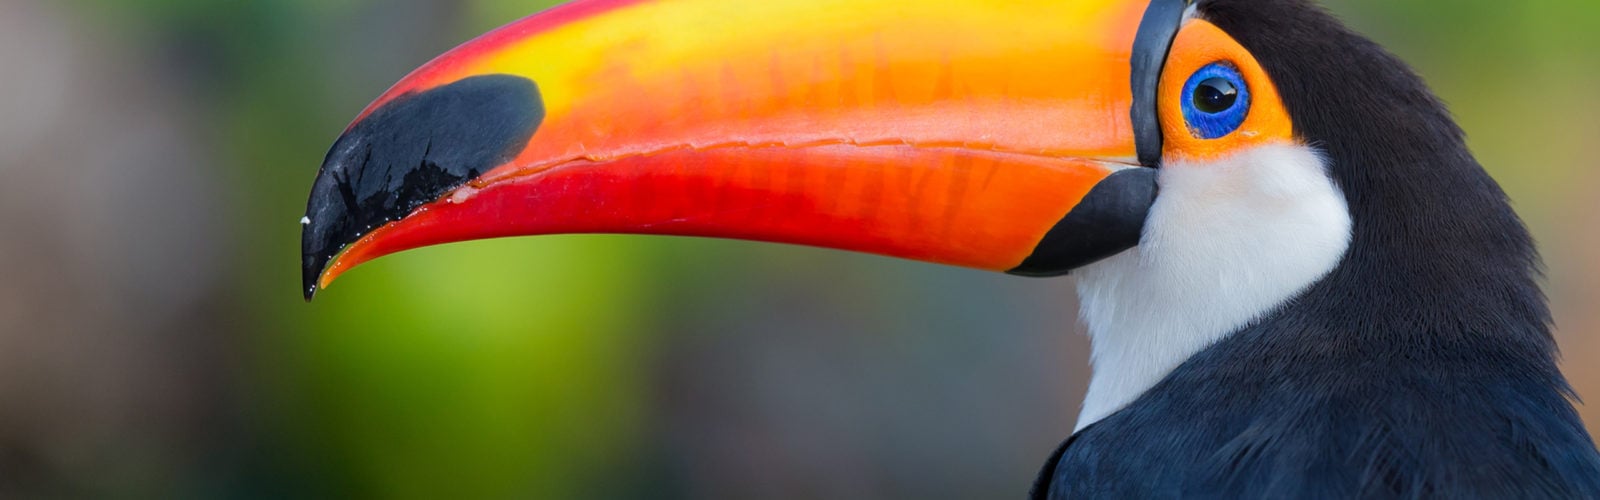 colombia-amazon-toucan